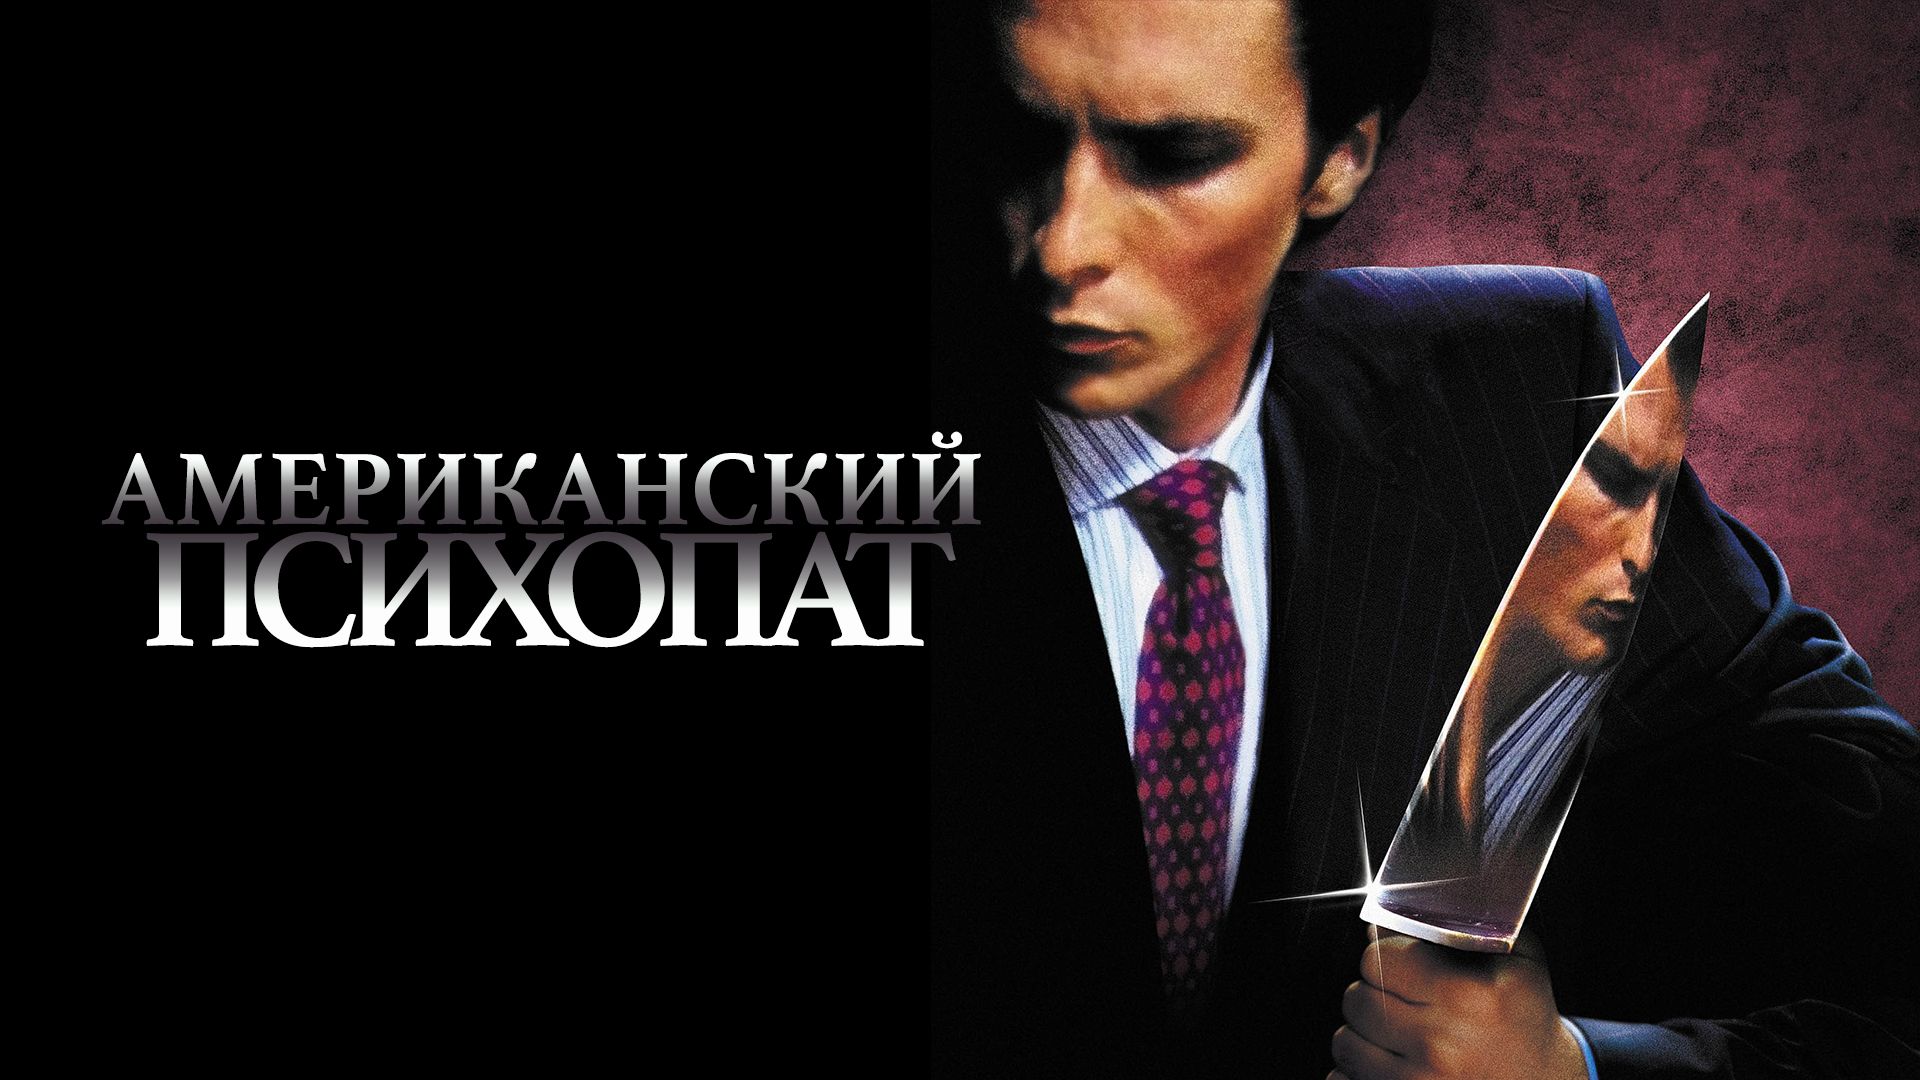 Американский психопат (фильм, 2000) смотреть онлайн в хорошем качестве HD  (720) / Full HD (1080)